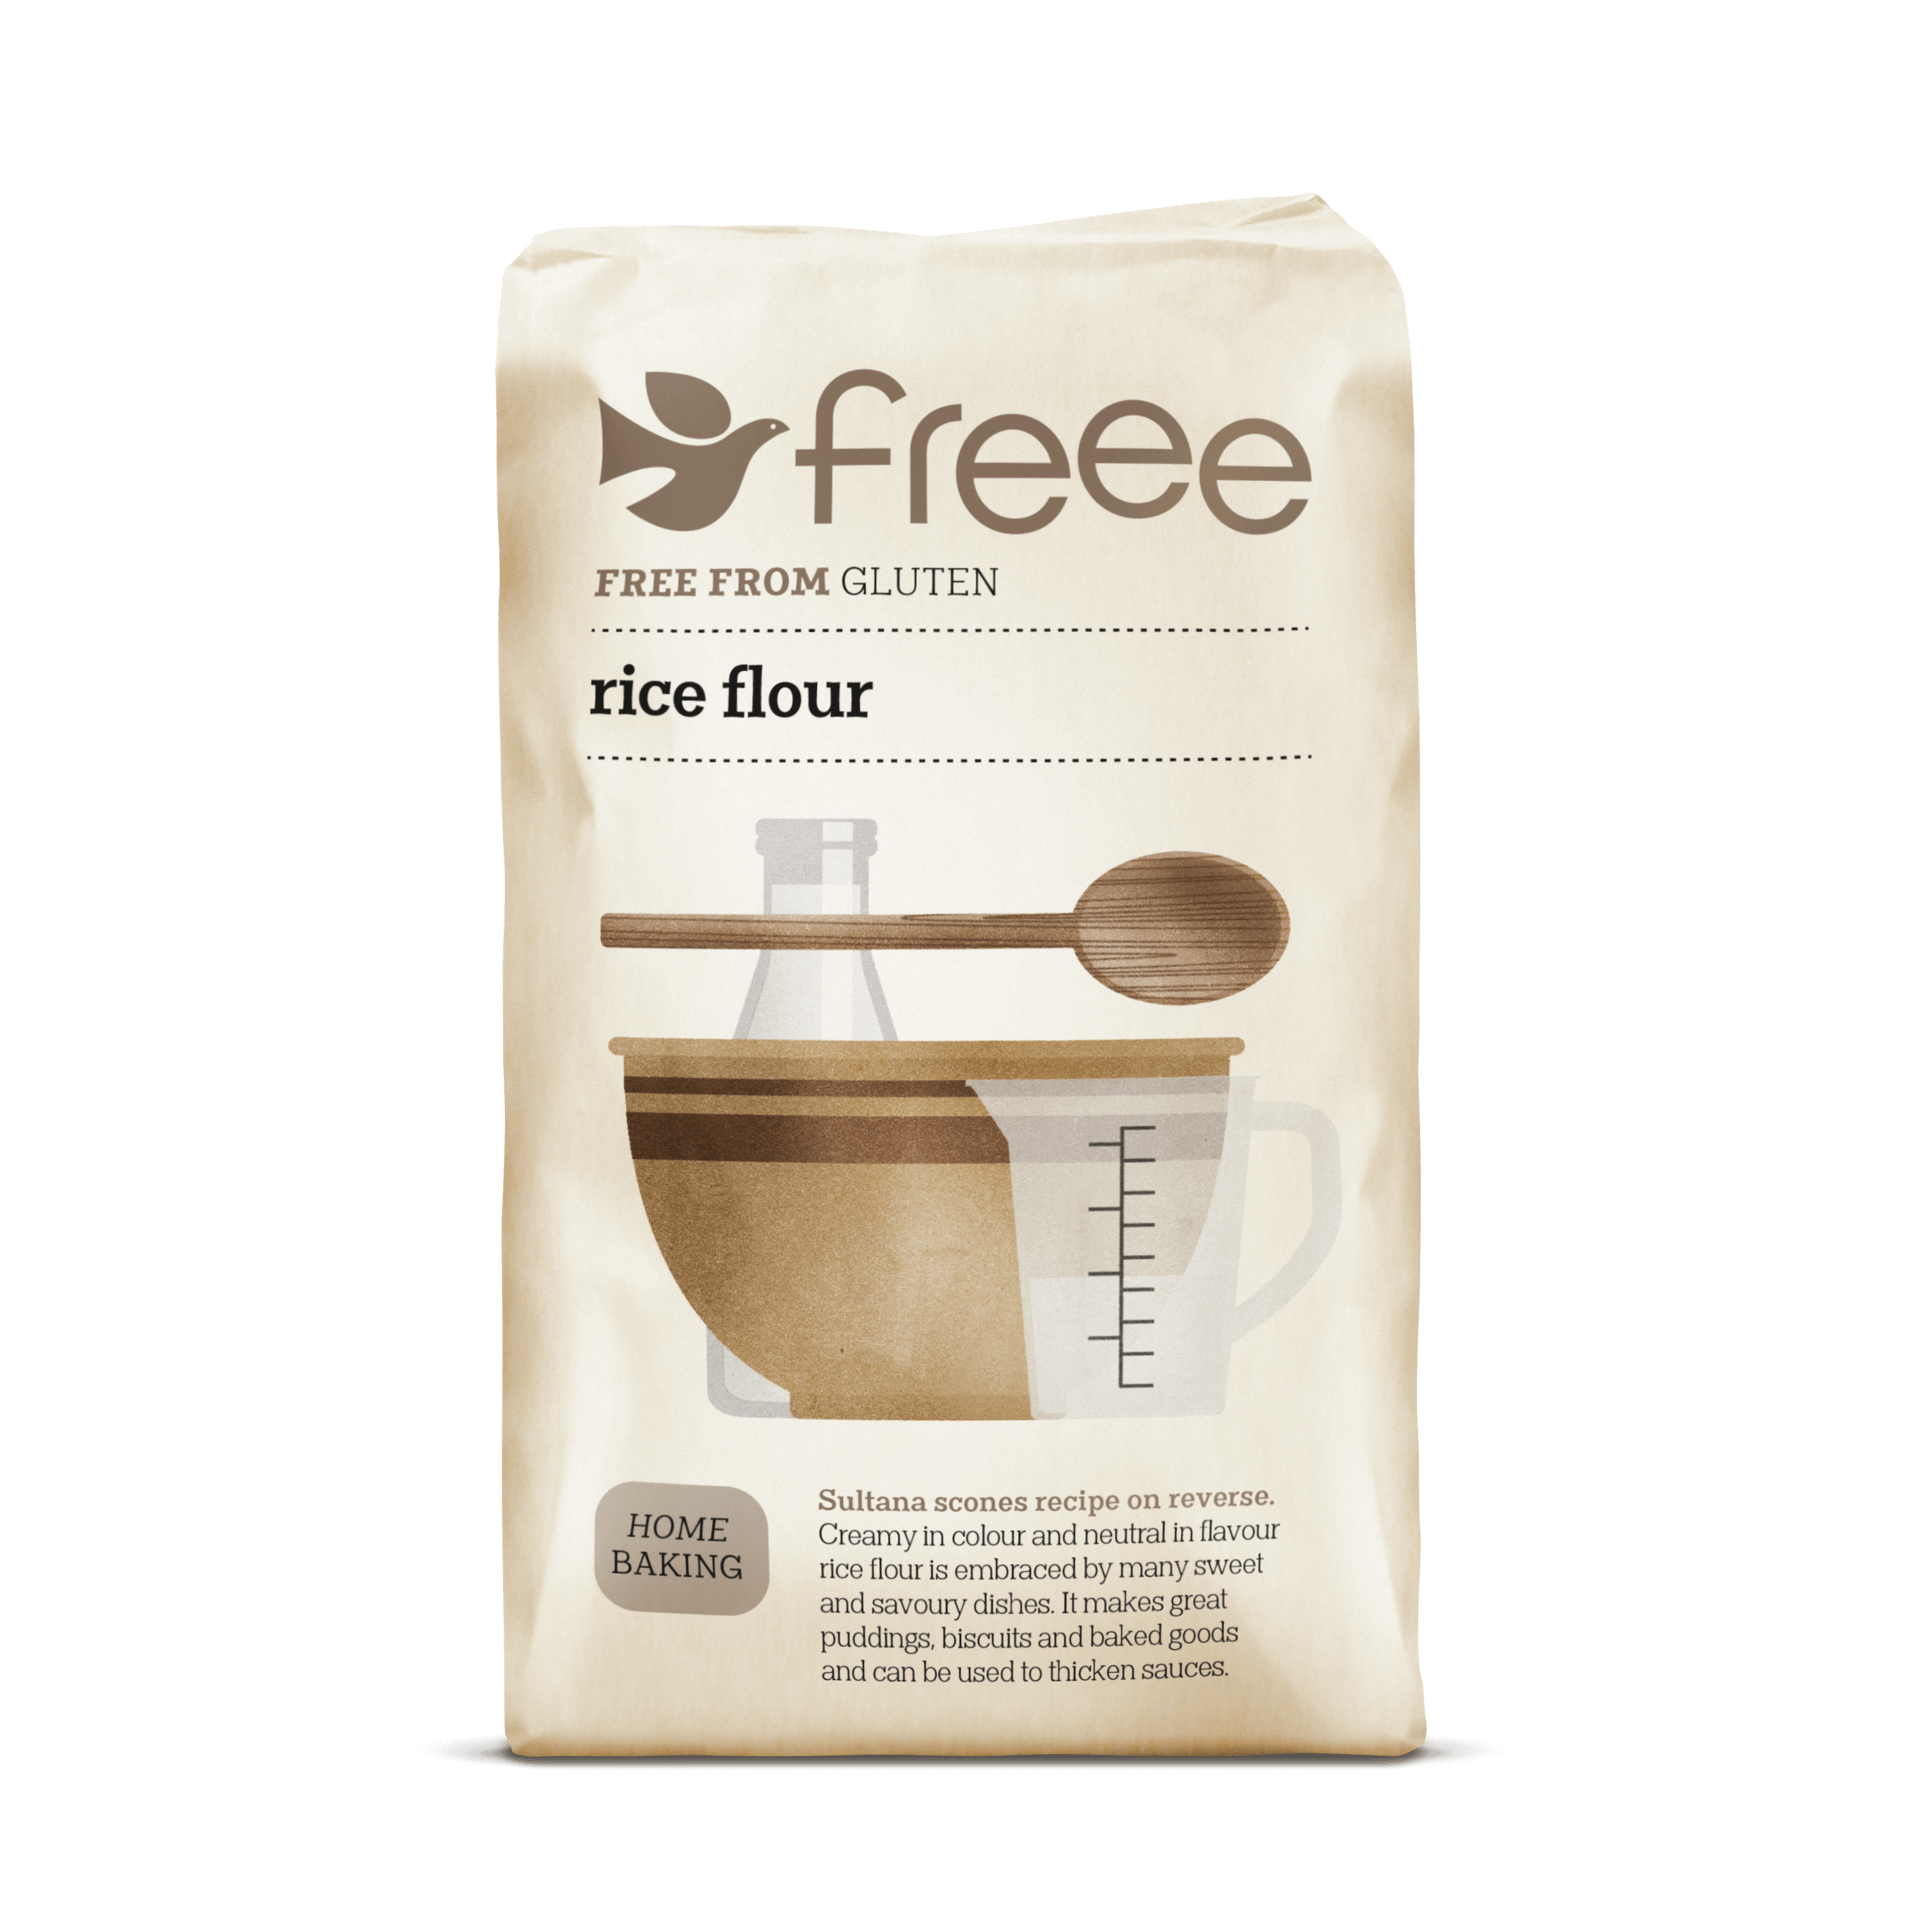 Freee Doves Farm Rýžová mouka bez lepku 1000 g